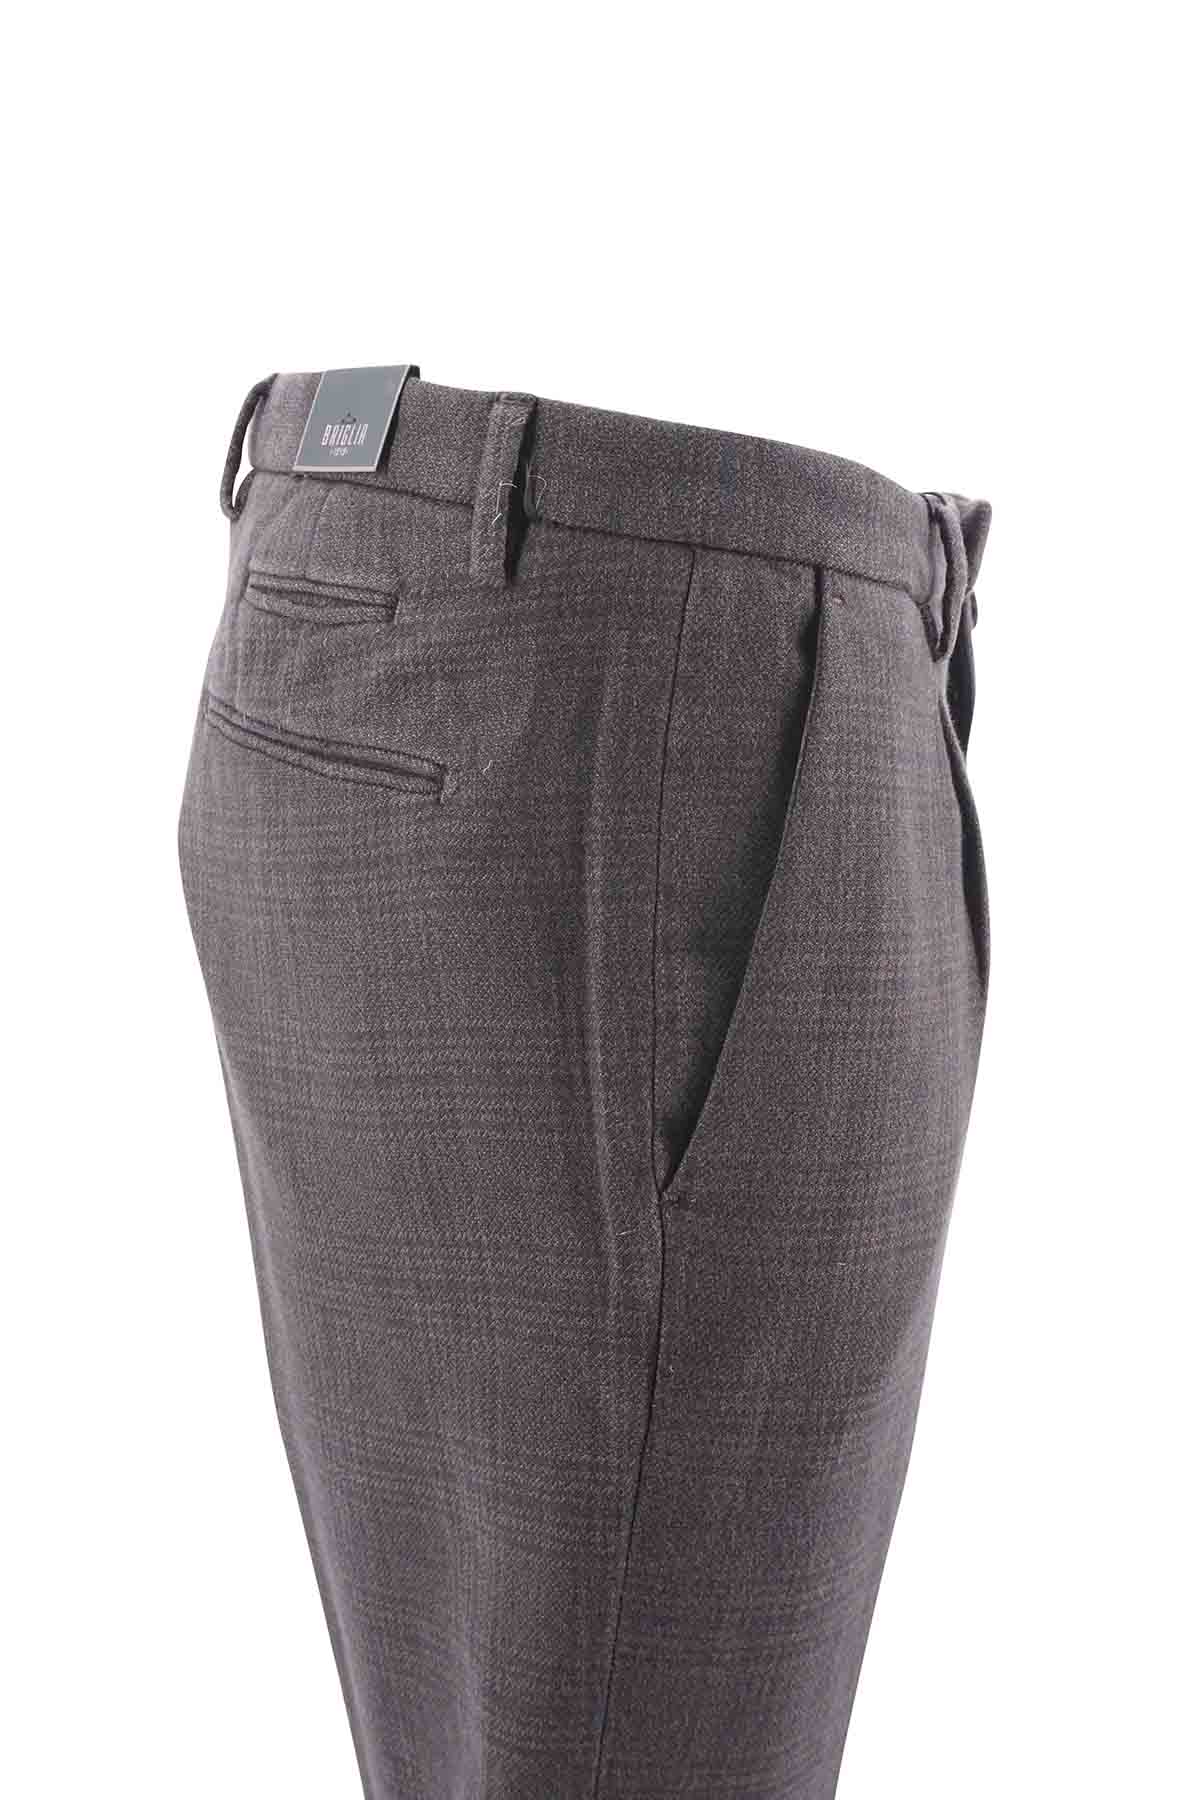 Pantalone Briglia Slim Fit / Marrone - Ideal Moda